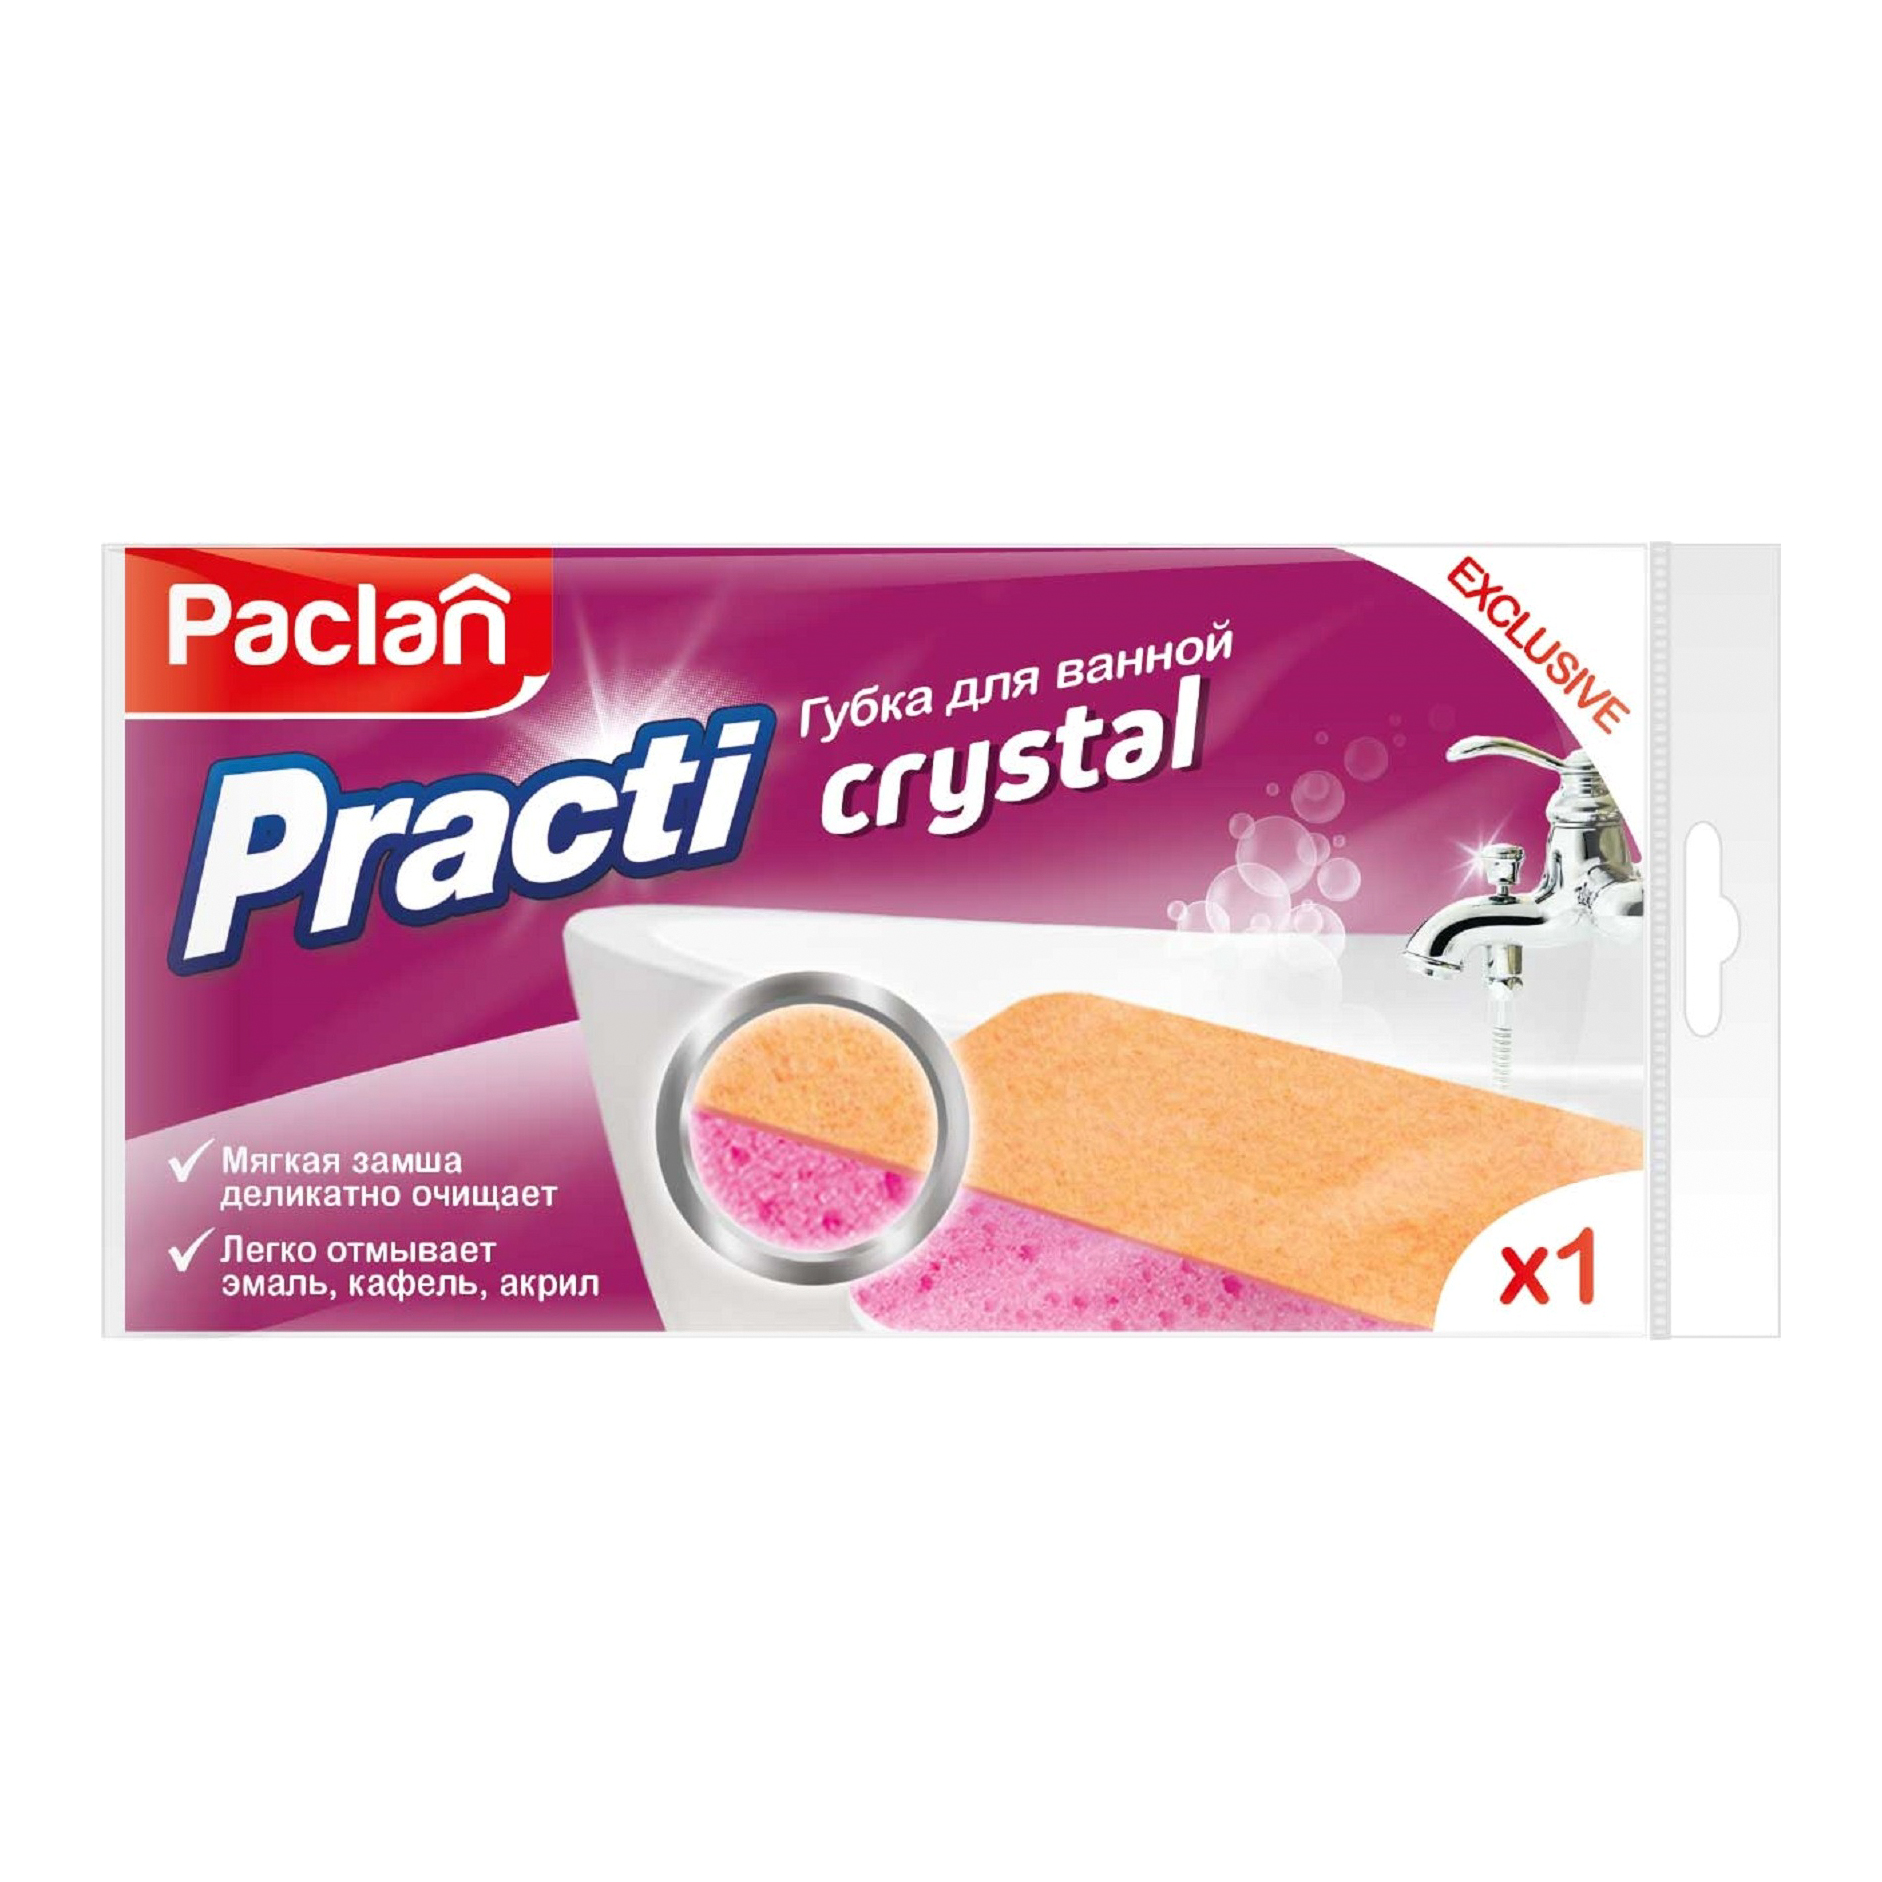 Губка для ванной Paclan Practi Crystal губка для ванной рыжий кот